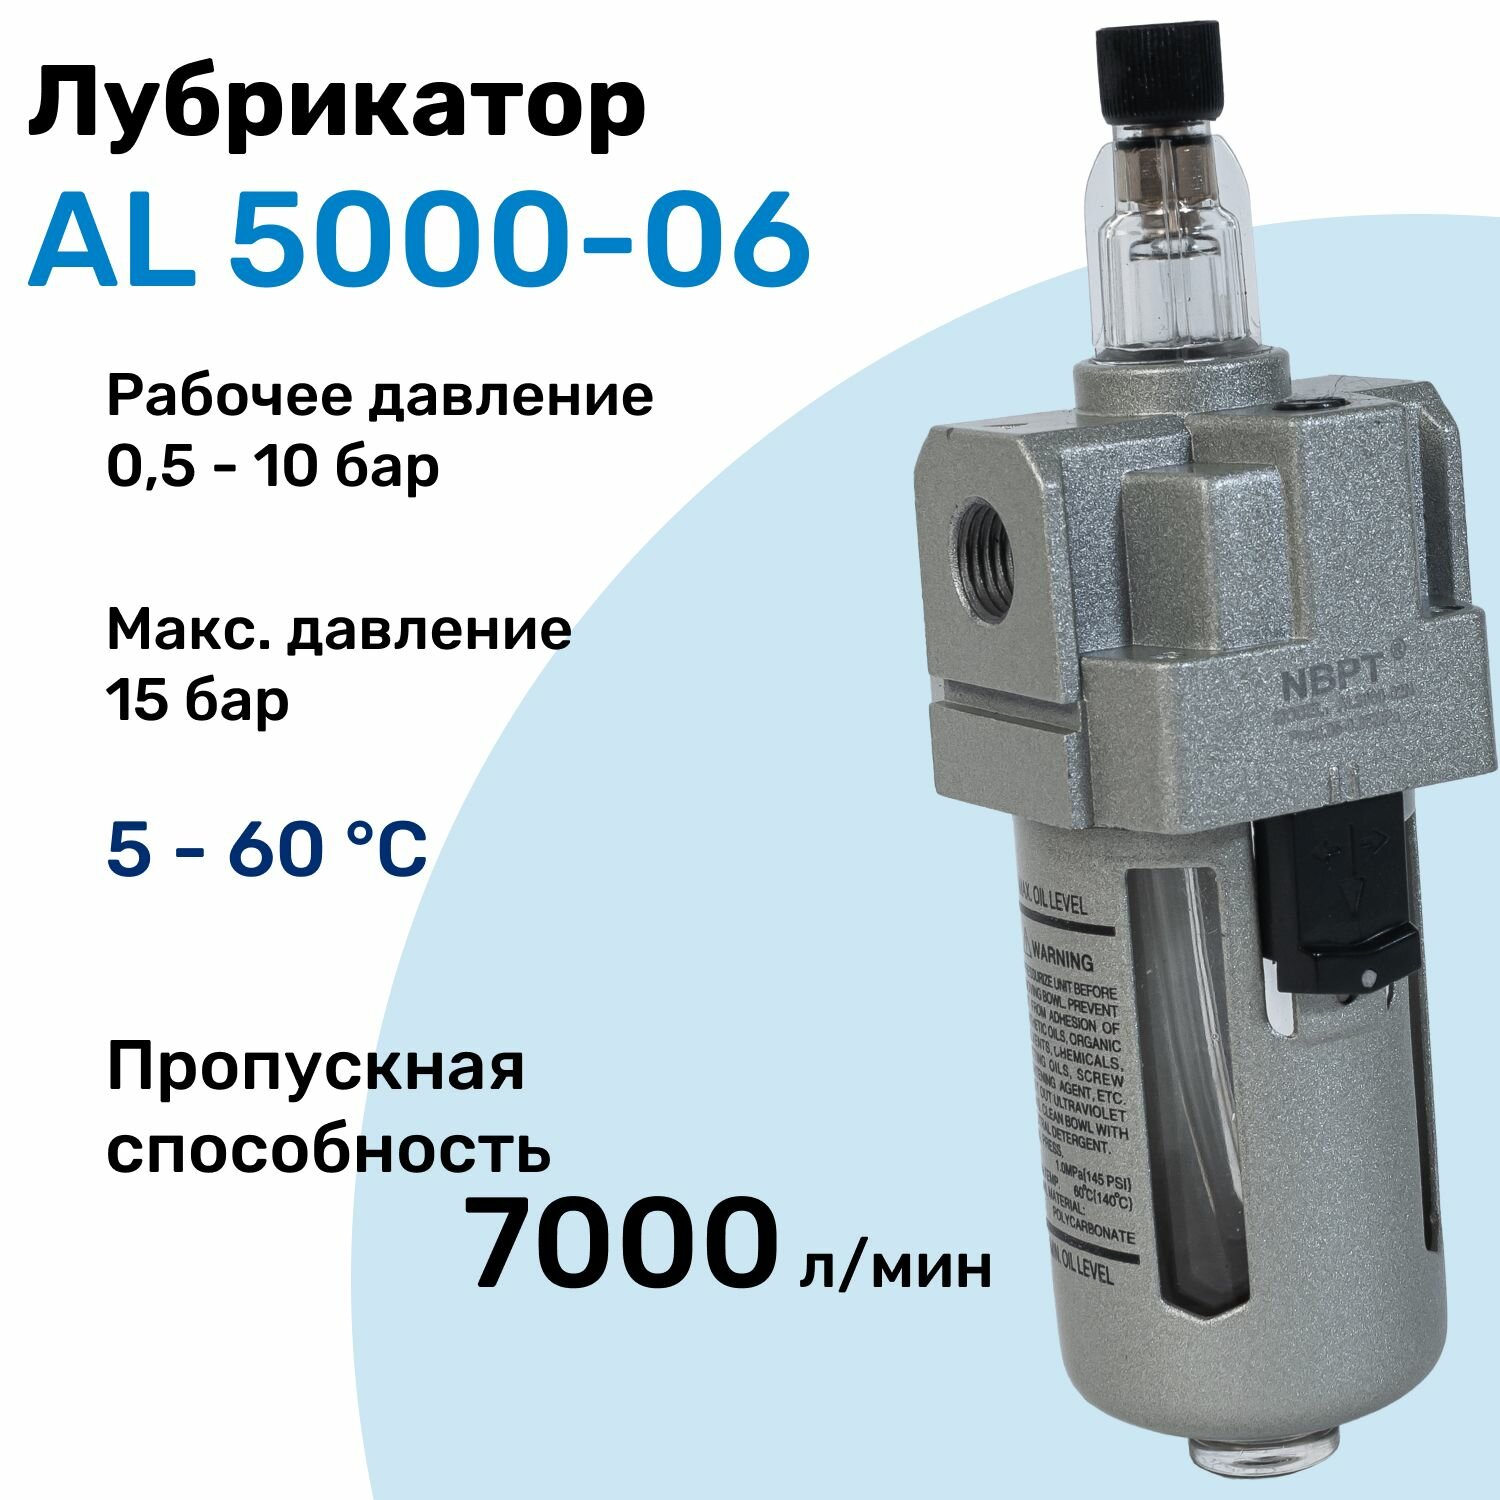 Лубрикатор для пневмоинструмента AL 5000-06, 10 бар, 7000л/мин, Профессиональный Блок подготовки воздуха NBPT